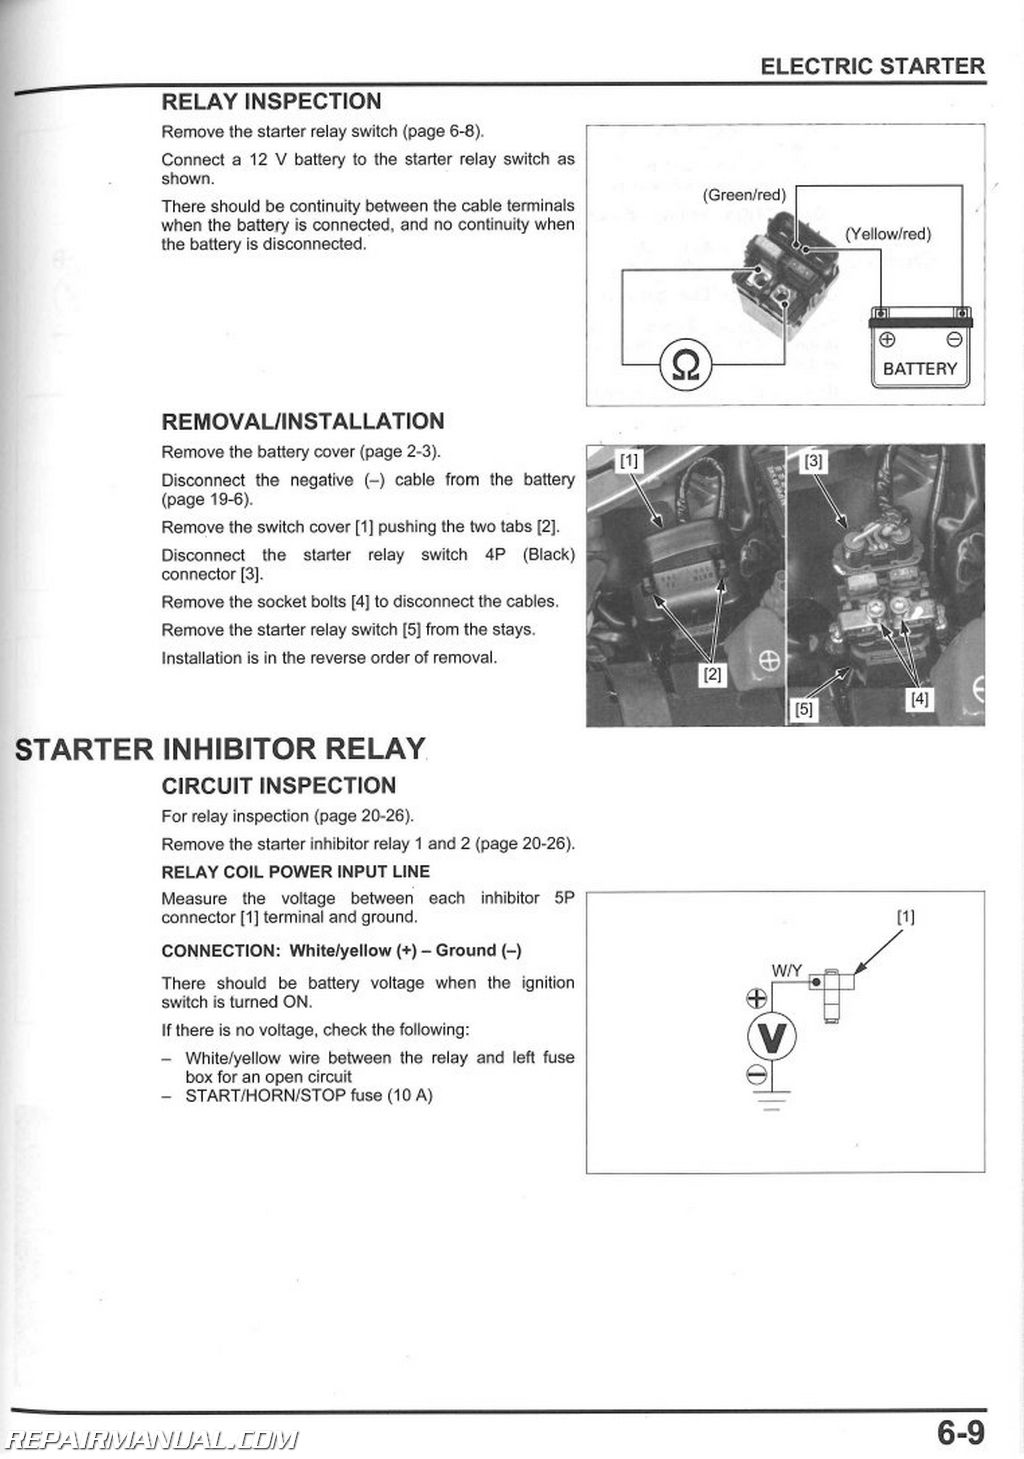 2007 Honda vfr 800 owners manual